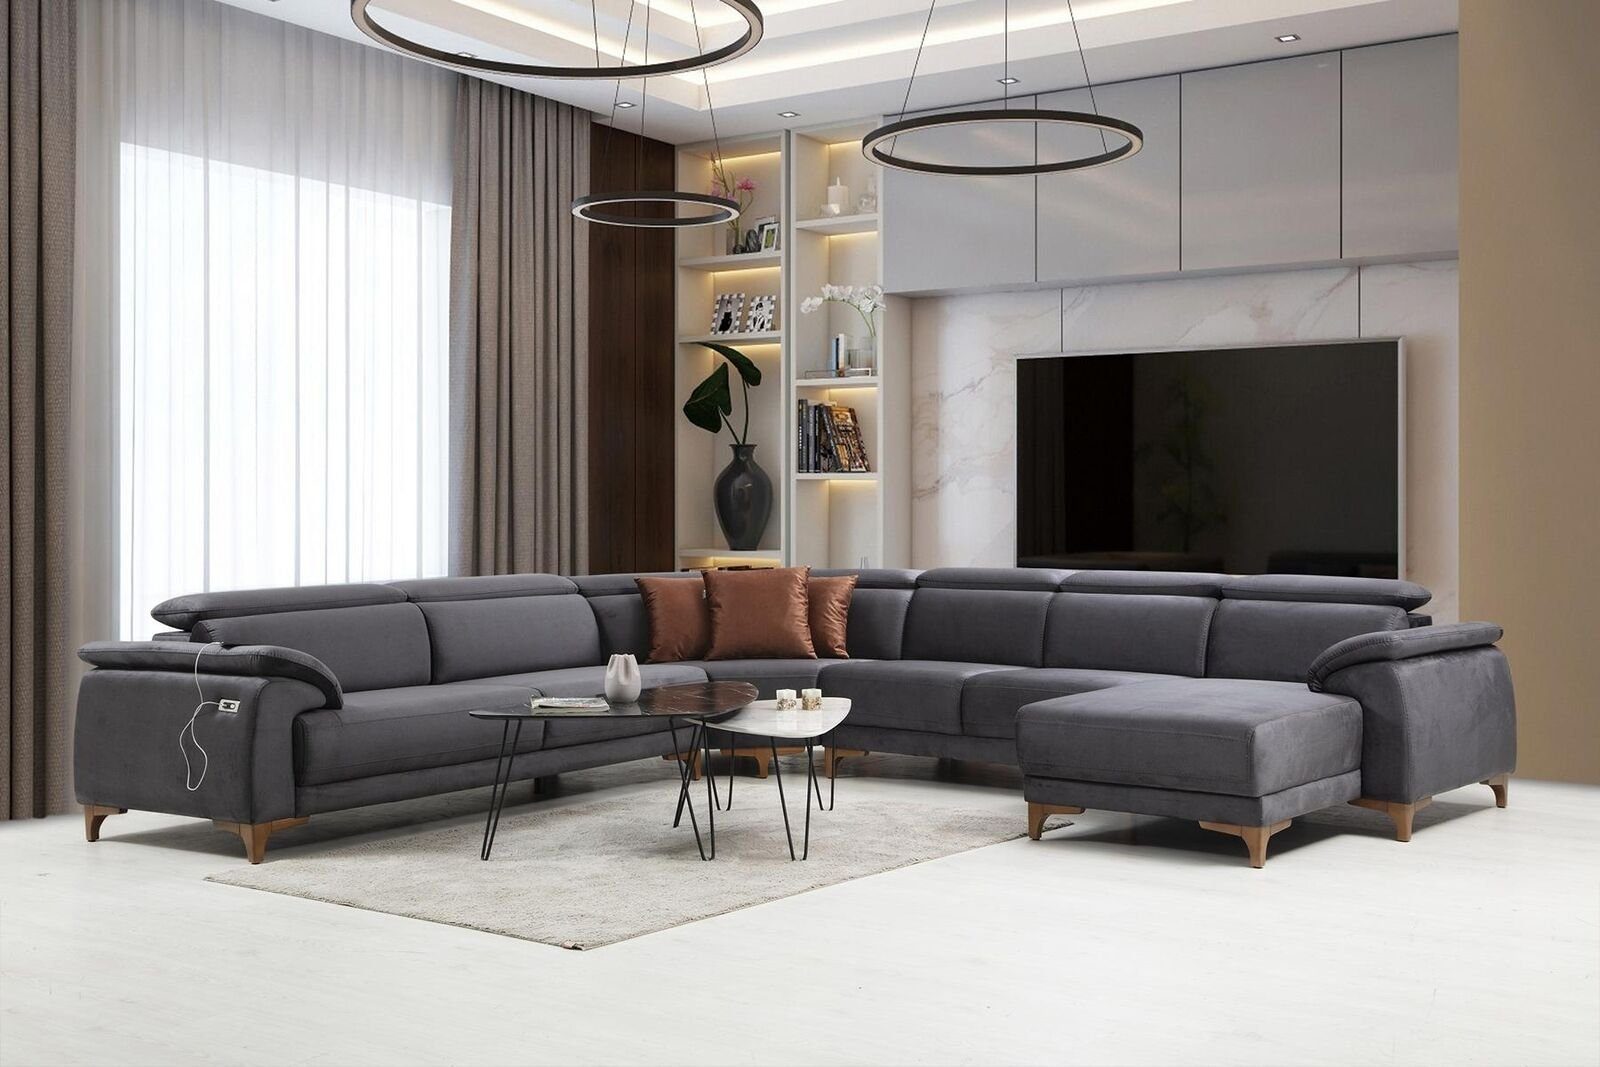 6 JVmoebel Modern, Polstermöbel Ecksofa Ecksofa U-Form in Sofa Made Europa Teile, Wohnzimmer Couch